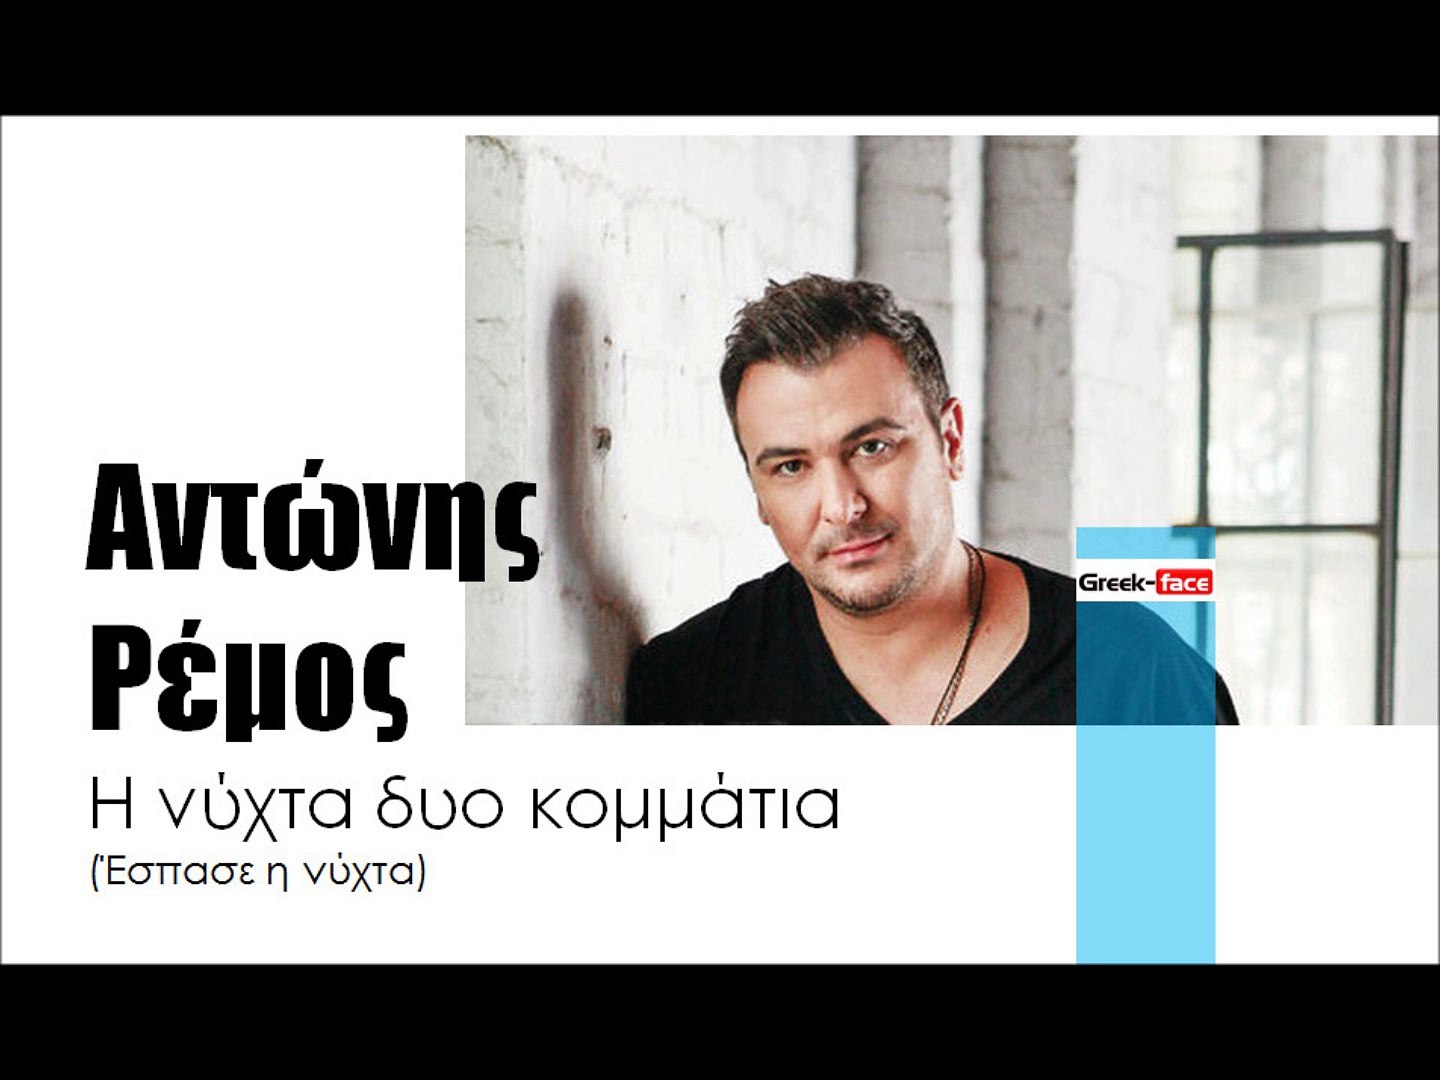 ΑΡ| Αντώνης Ρέμος - Η νύχτα δυο κομμάτια (Έσπασε η νύχτα) | (Official mp3  hellenicᴴᴰ music web promotion) Greek- face - video Dailymotion